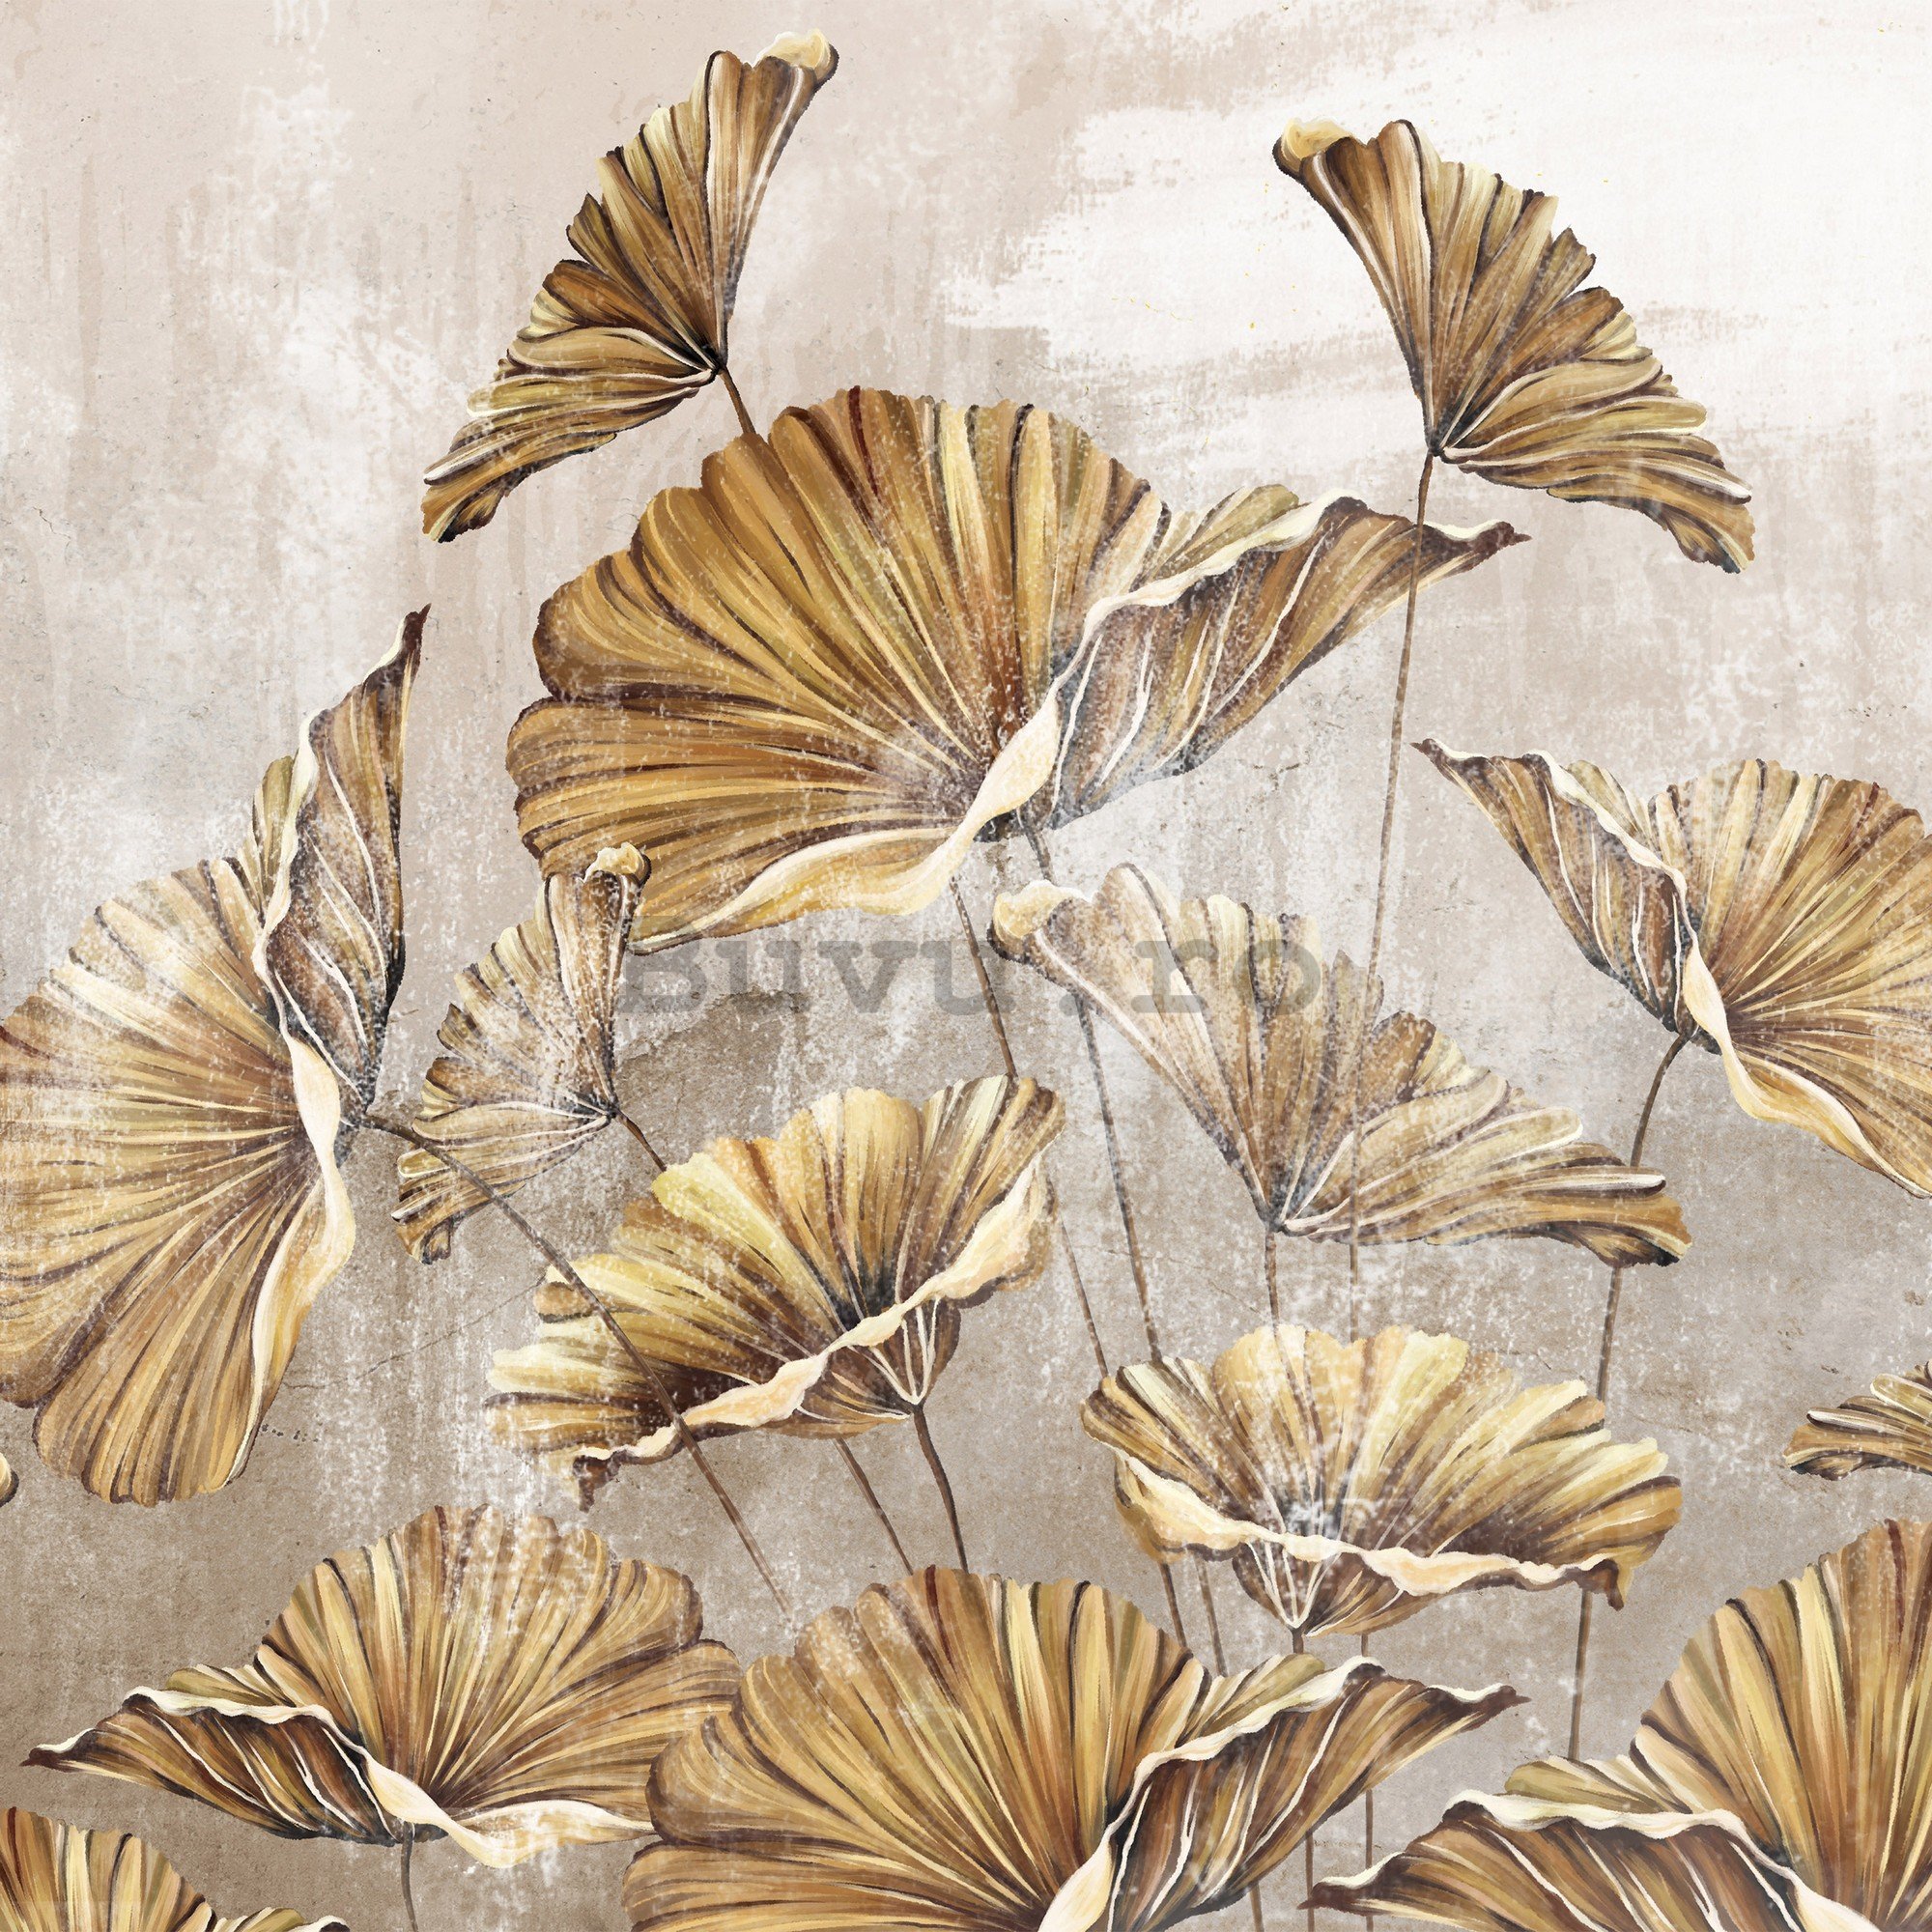 Fototapet vlies: Golden leaves - 416x254 cm